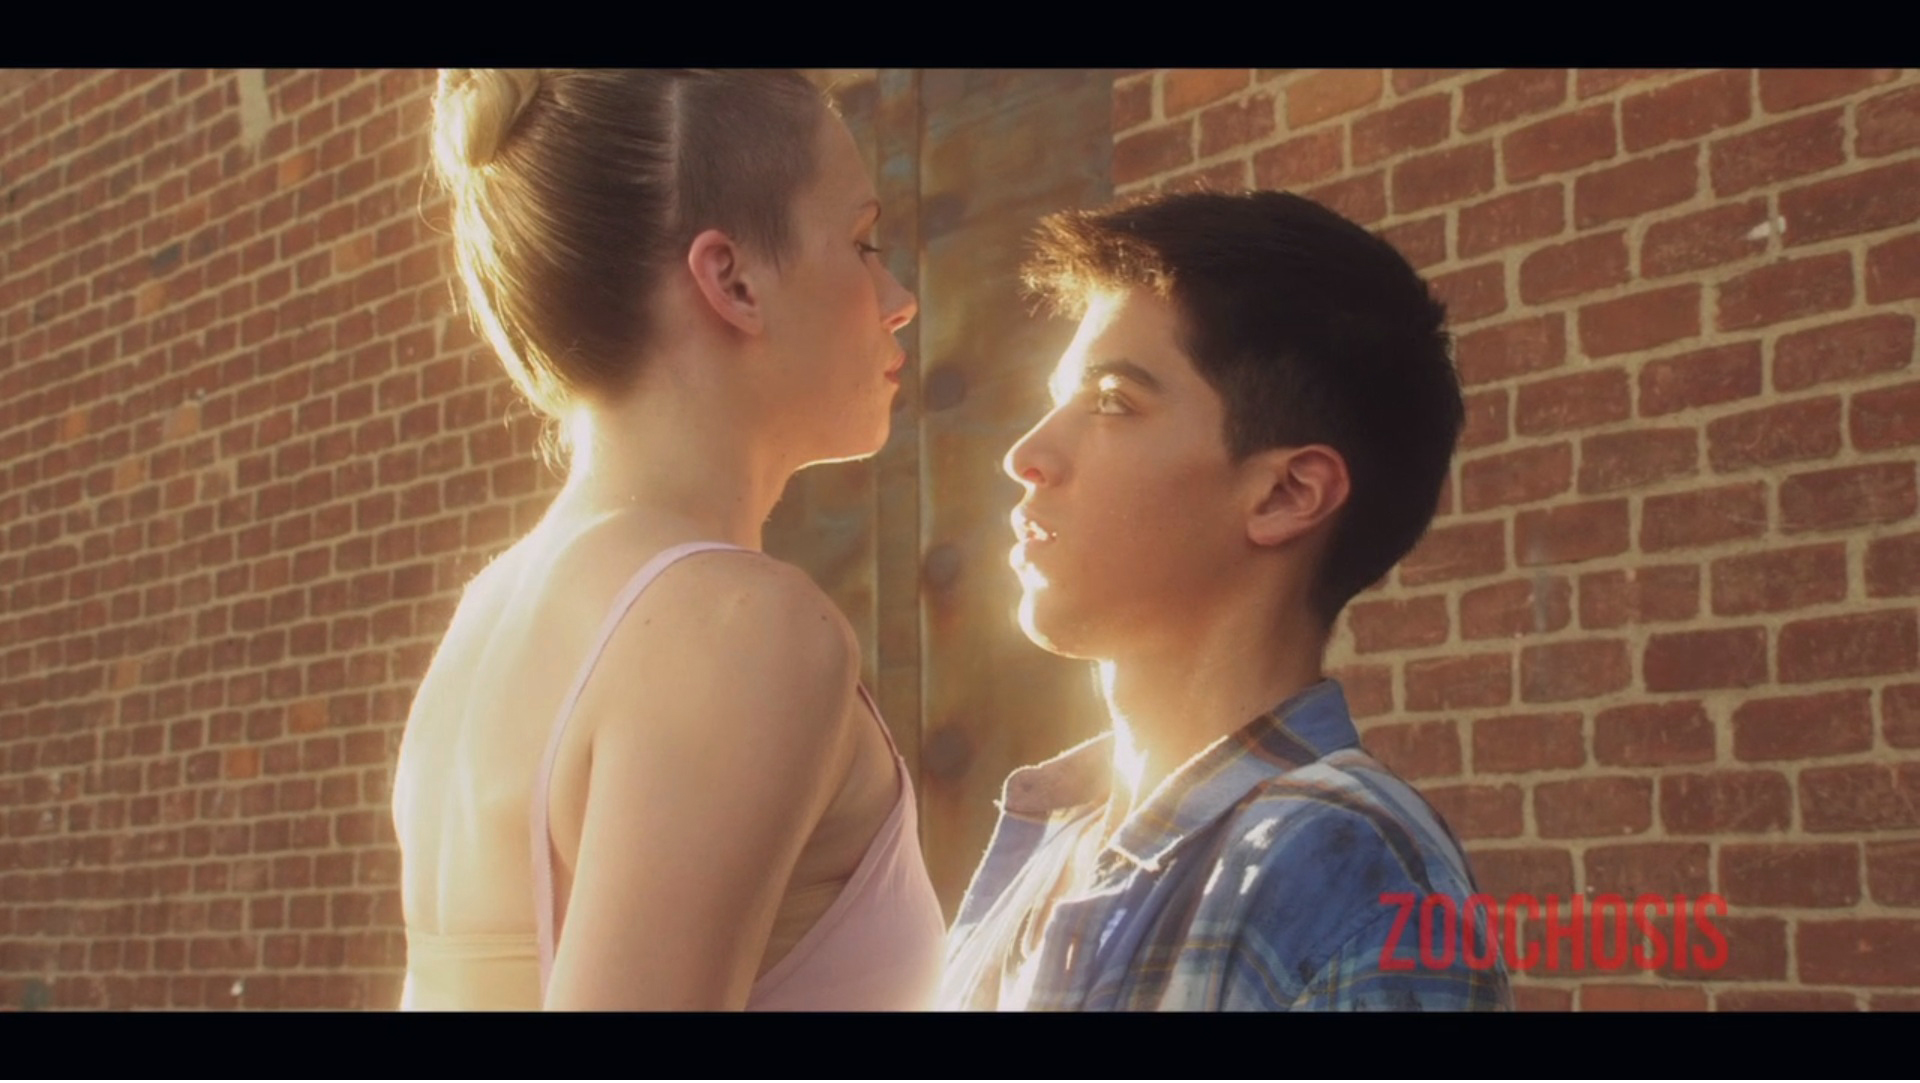 Nunez alongside actress Kate Pierson in the webisode Zoochosis